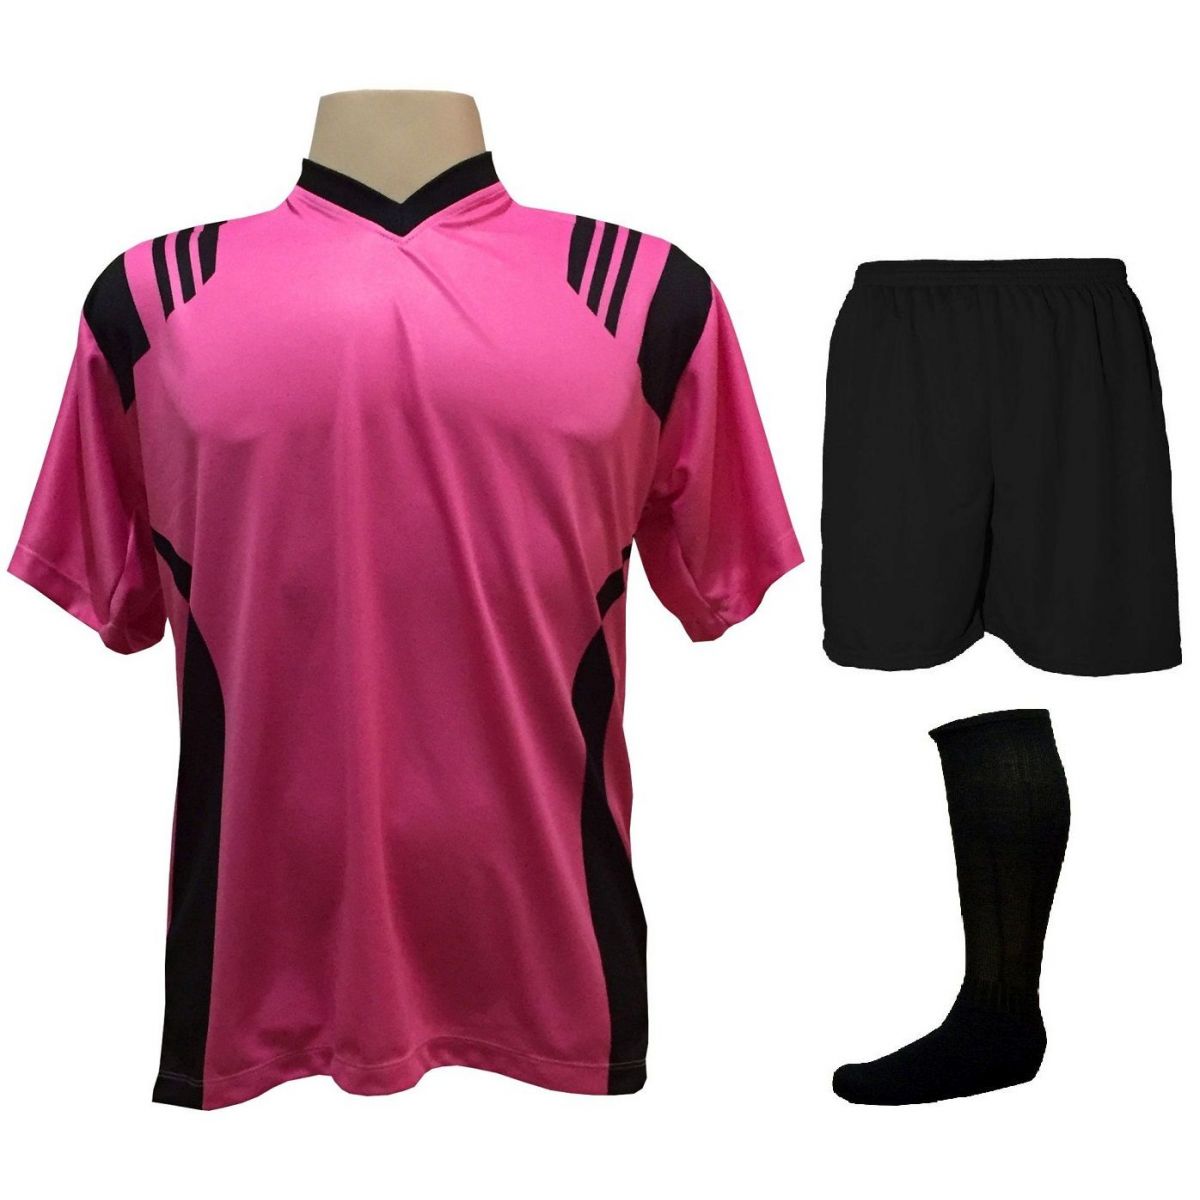 Uniforme Completo modelo Roma 18+2 (18 Camisas Pink/Preto + 18 Calções Madrid Preto + 18 Pares de Meiões Pretos + 2 Conjuntos de Goleiro) + Brindes